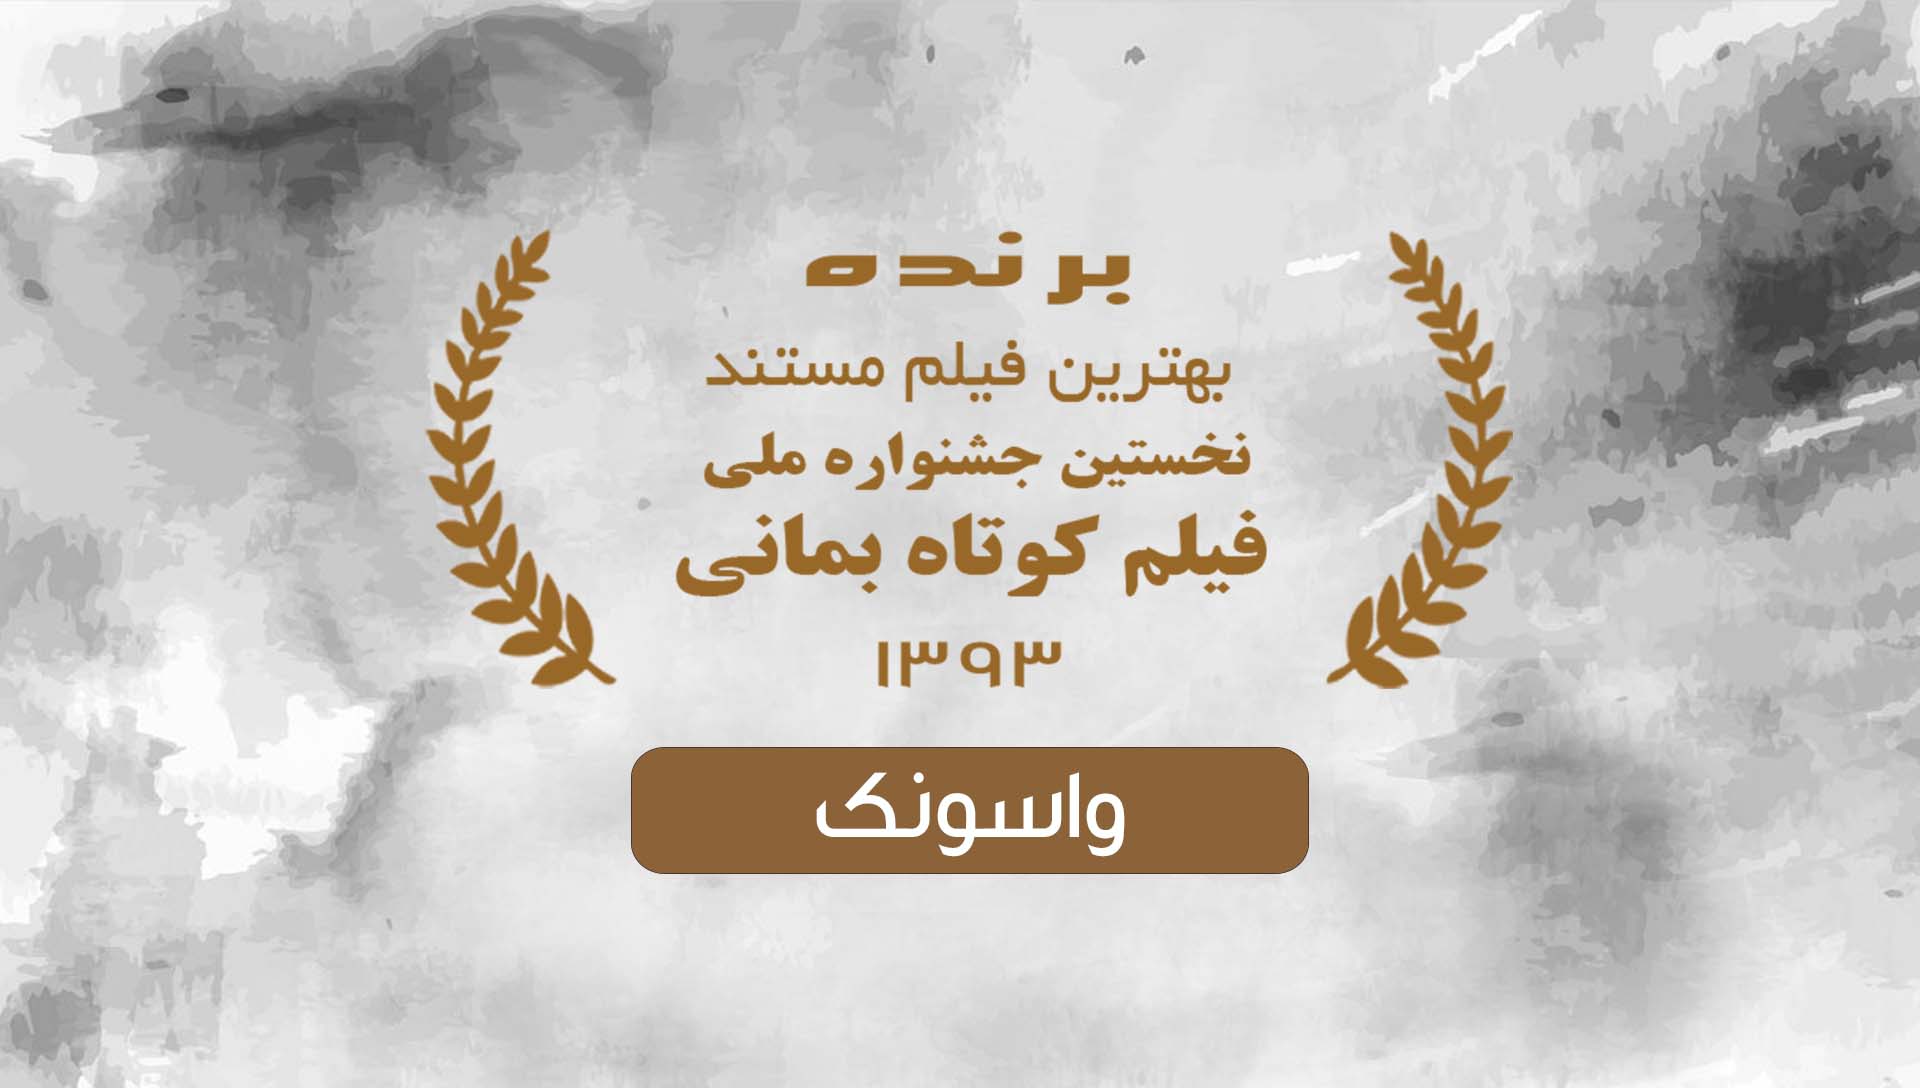 جشنواره فیلم کوتاه بمانی 93 - شرکت فیلم سازی زوم شیراز برادران شریفی